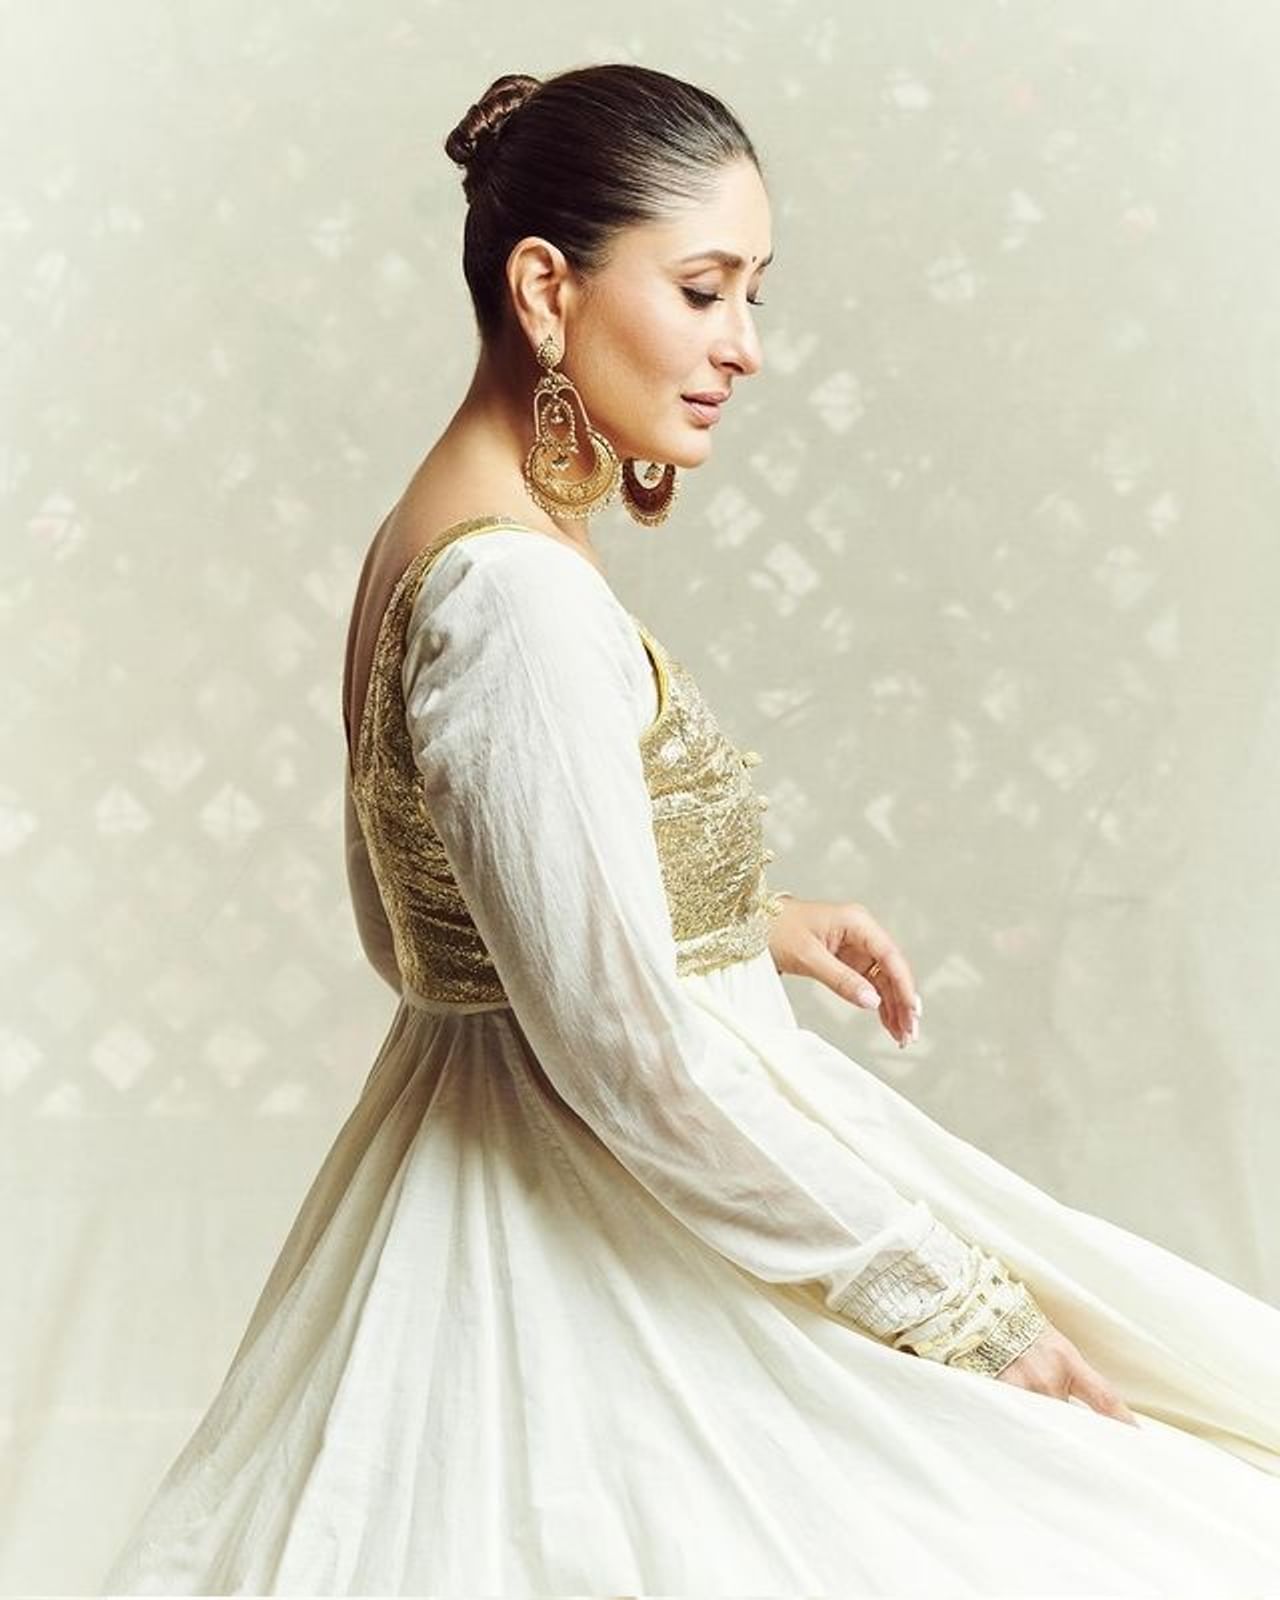 अभिनेत्री करीना कपूर हिने सोशल मीडियावर स्वतःचे काही फोटो पोस्ट केले आहे. पारंपरिक पांढऱ्या रंगाच्या ड्रेसमध्ये अभिनेत्रीचं सौंदर्य फुलून दिसत आहे. 